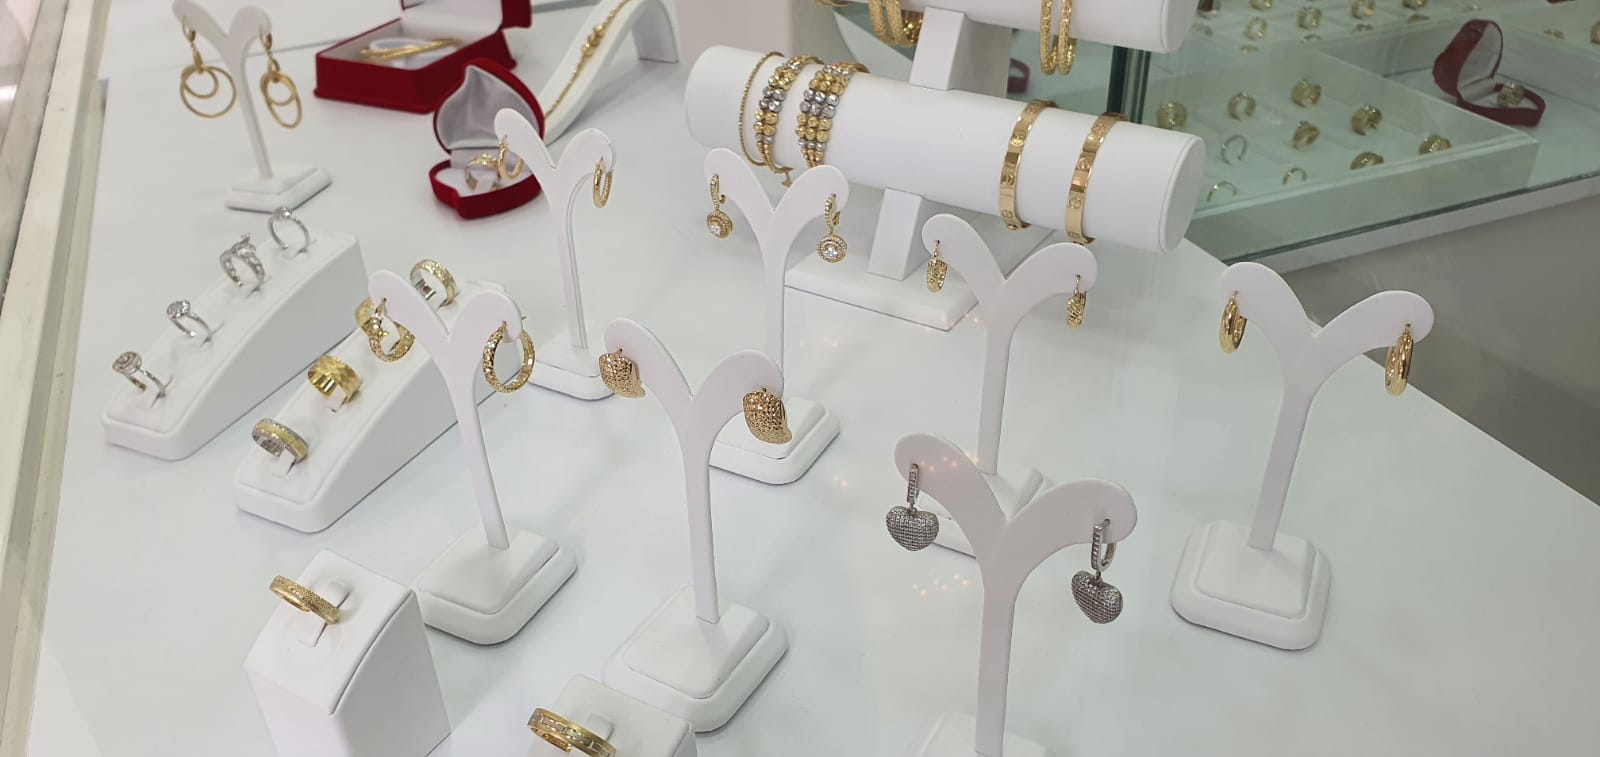 بمناسبة عيد الأم.. تشكيلة واسعة من المجوهرات والاكسسوارات لدى مجوهرات بيسان وبأسعار مميّزة